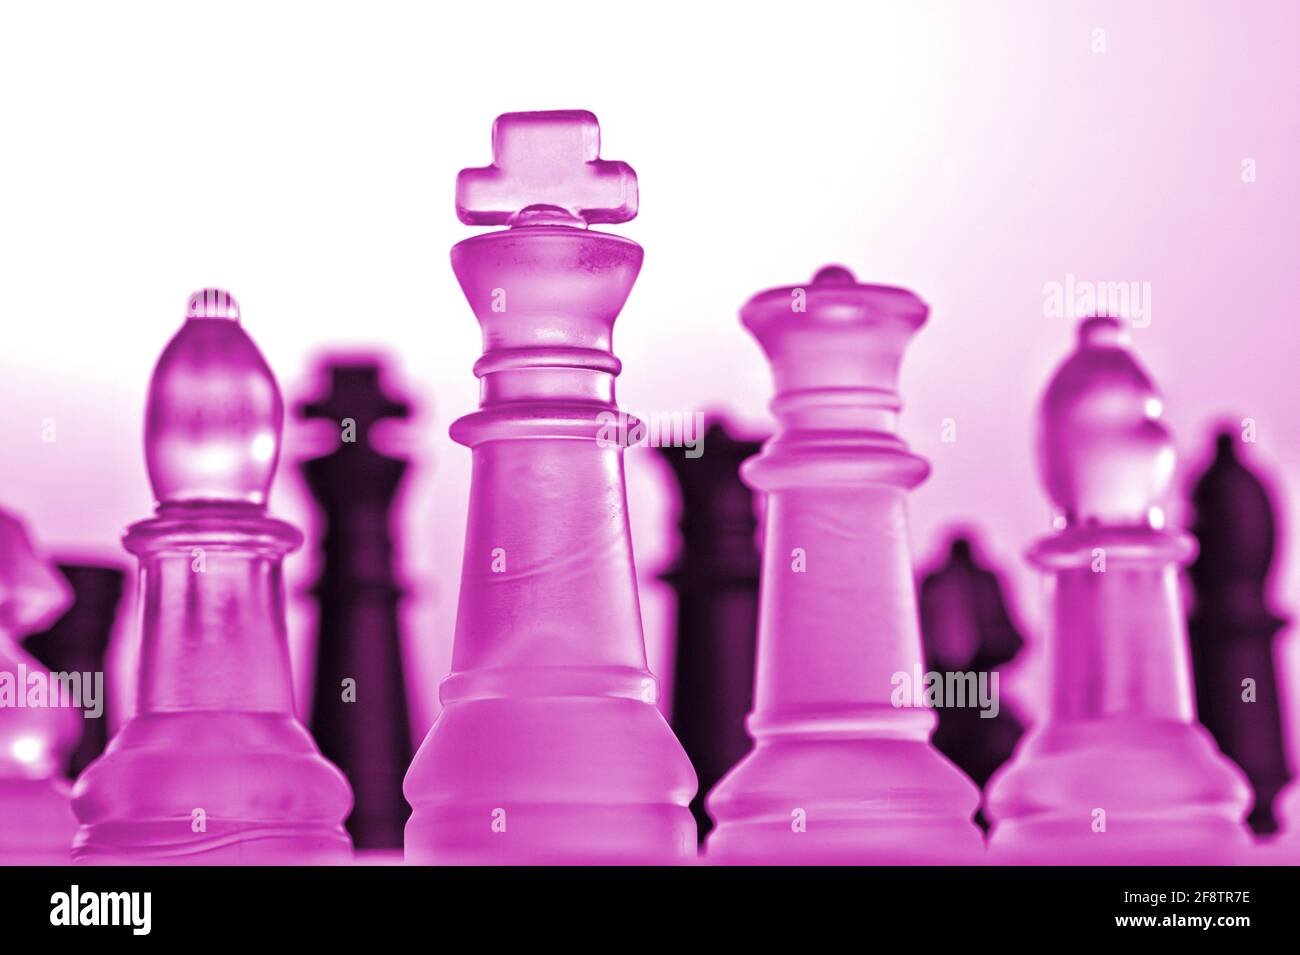 Alemania. 11th de Abr de 2021. Piezas de ajedrez simbólicas de un juego de  ajedrez hecho de vidrio con fondo neutro. Detalle de algunas figuras  blancas con un ambiente de luz rosa